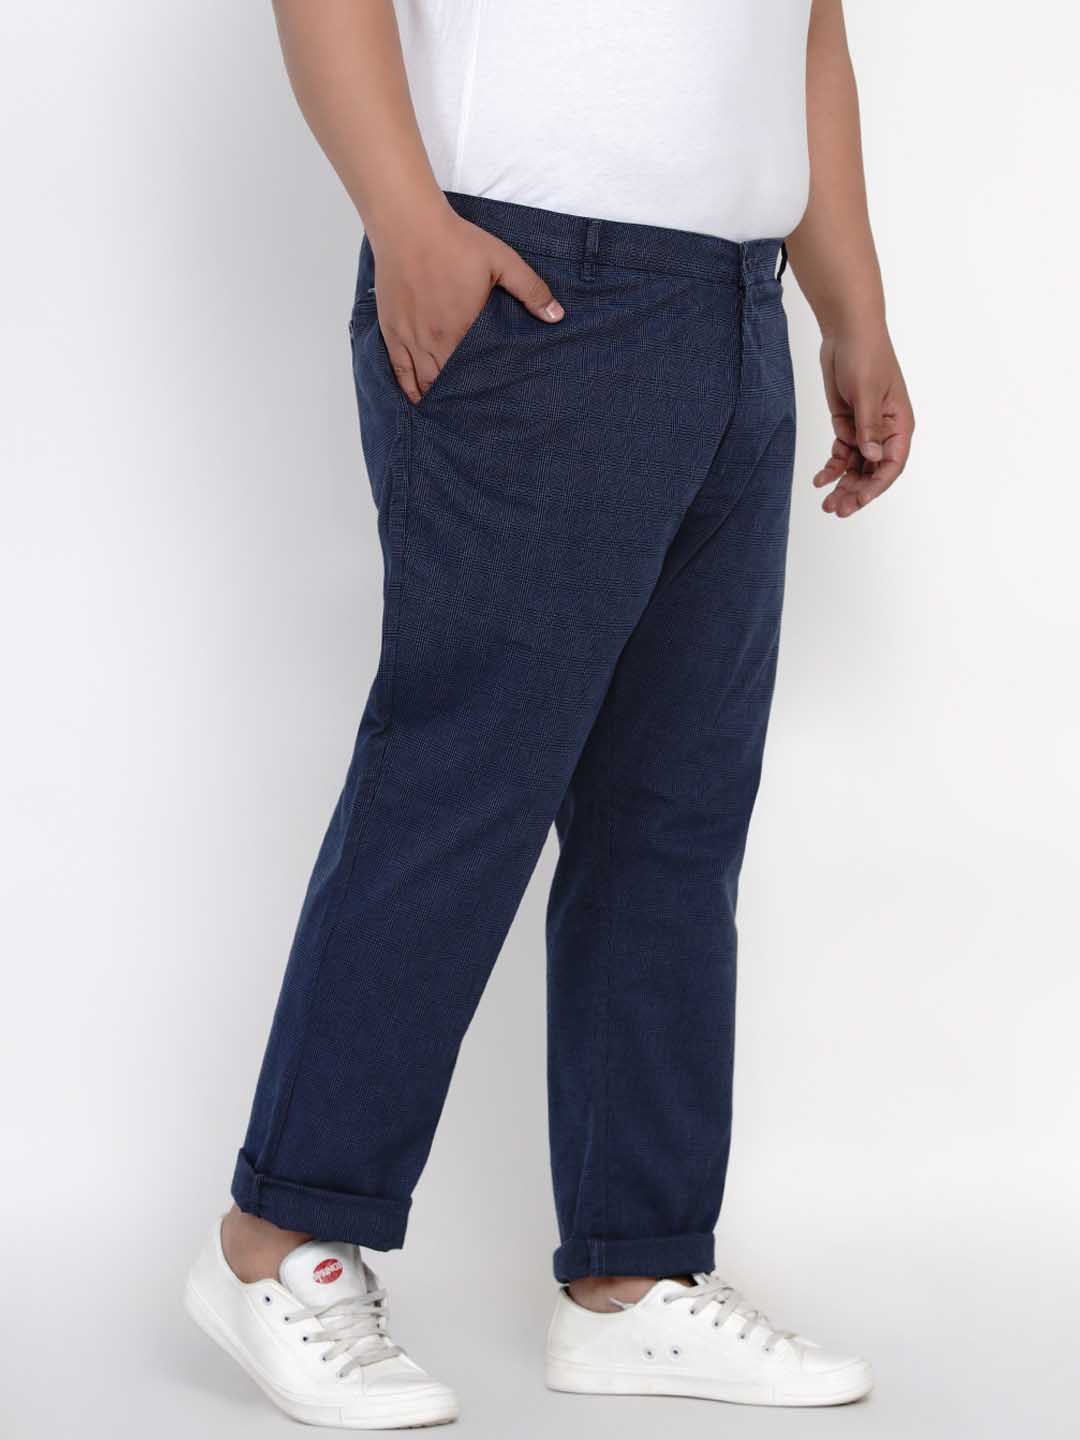 bottomwear/trousers/JPTR2148C/jptr2148c-2.jpg